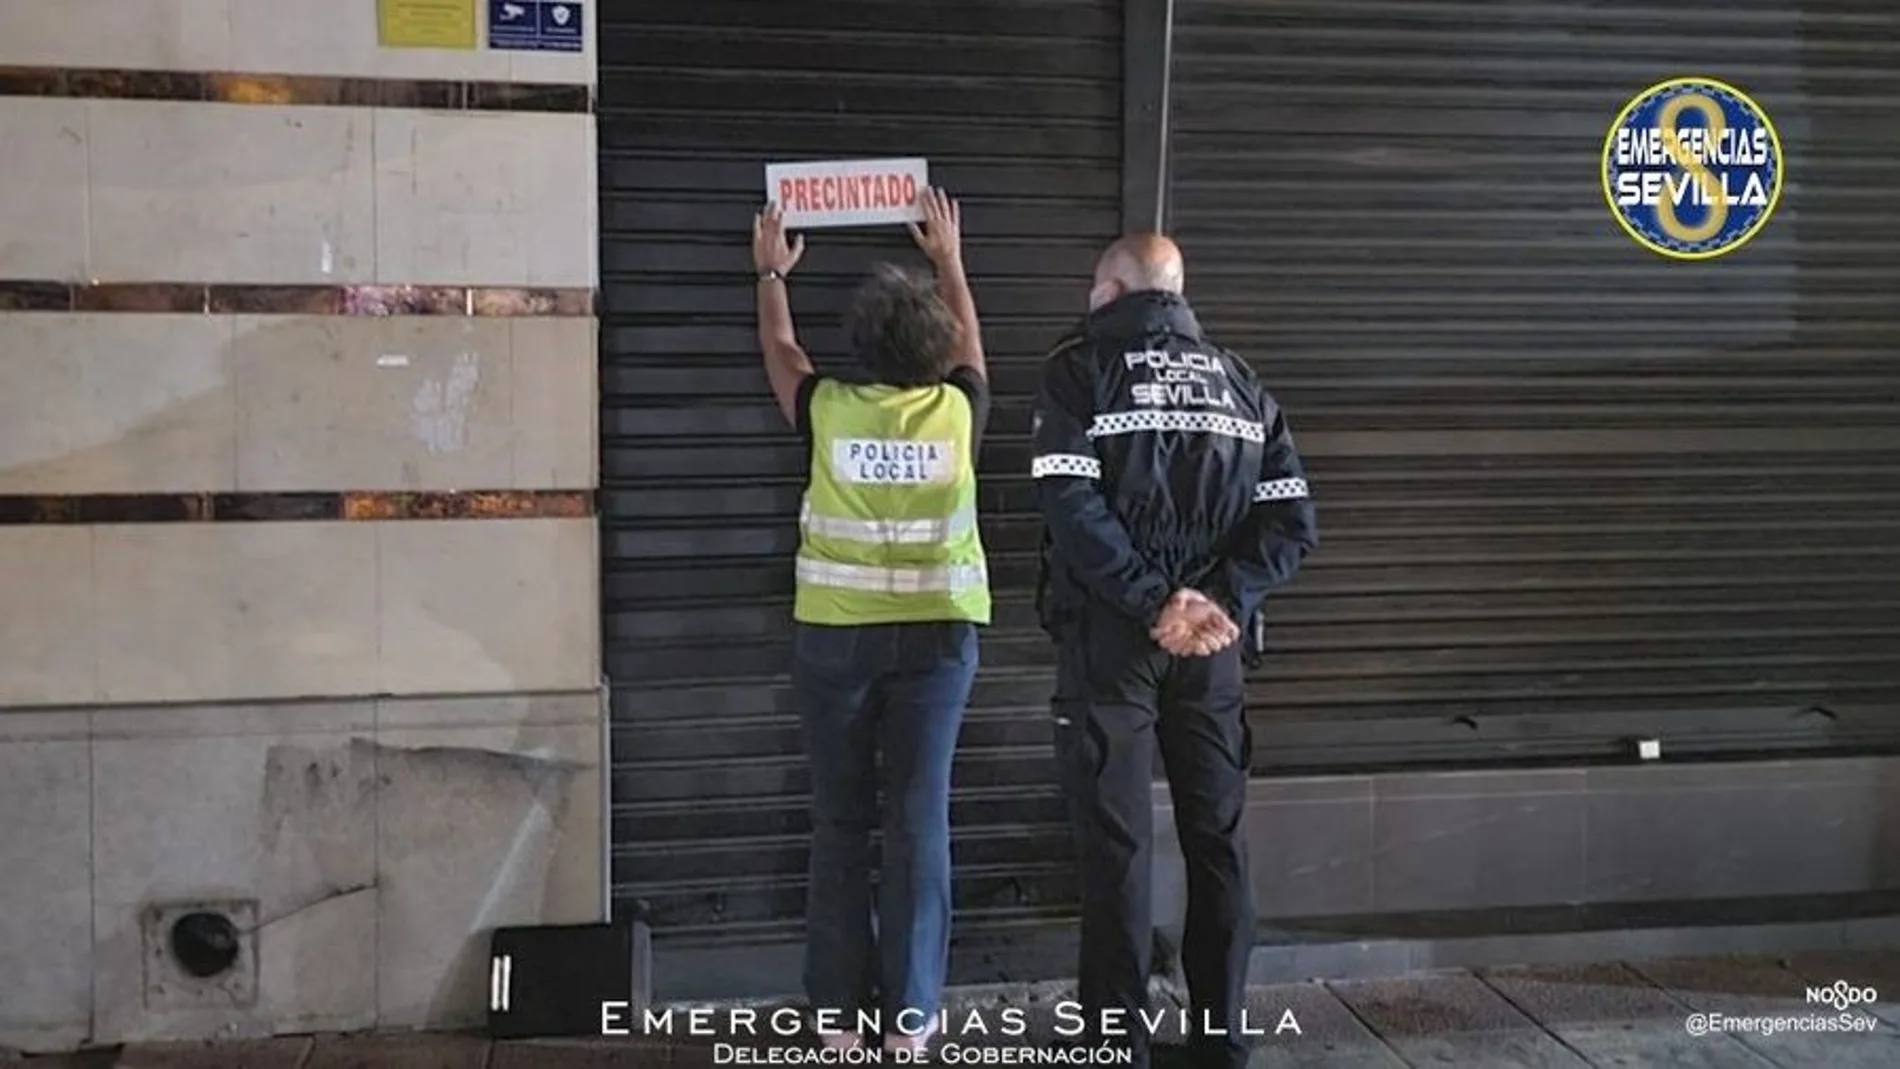 La Policía Local de Sevilla precinta un bar al incumplir las medidas anti covid